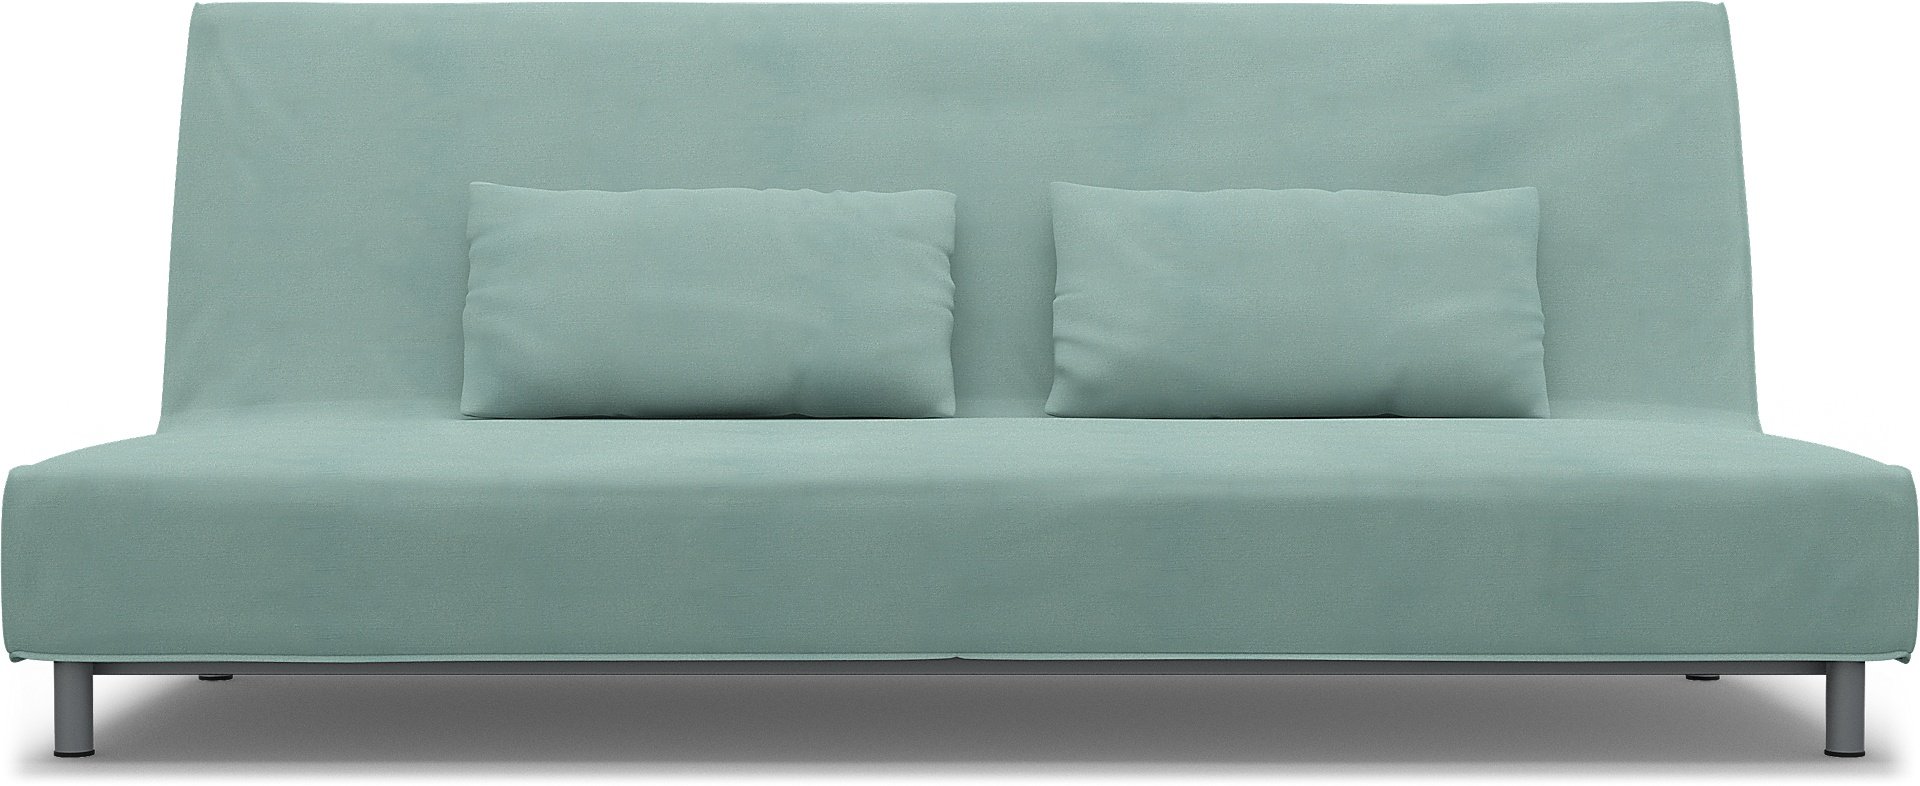 IKEA - Beddinge Sofa Bed Cover, Mineral Blue, Linen - Bemz